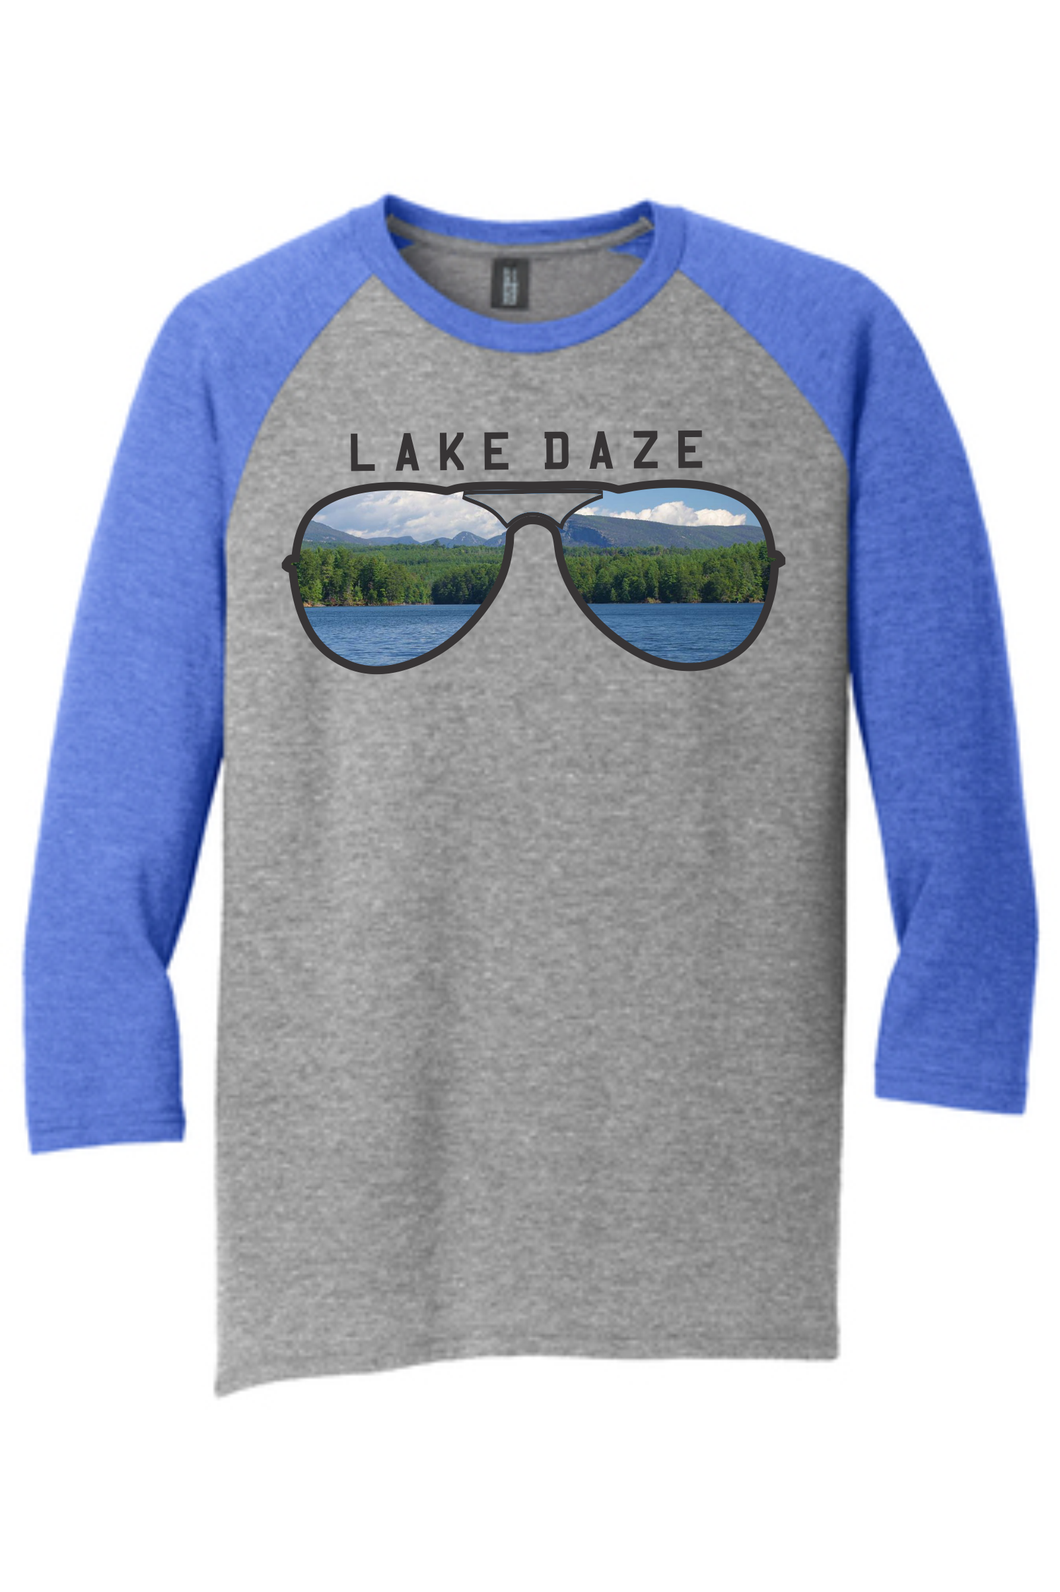 Lake James Lake Daze Shortoff Sunglasses Print - Long Sleeves Tees, Long Sleeve Hooded Tee and Raglans